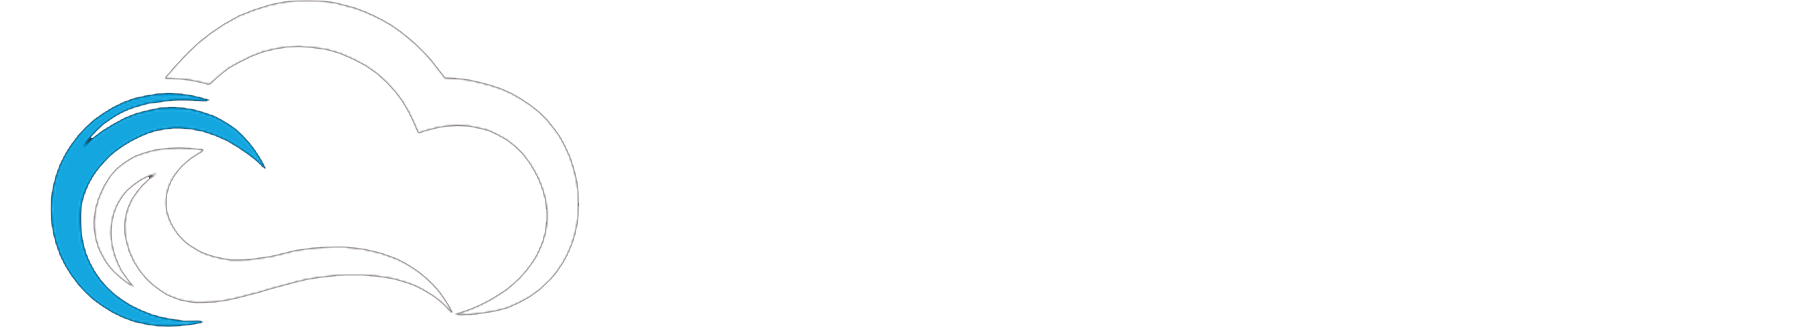 Cloudie Networks, LLC.